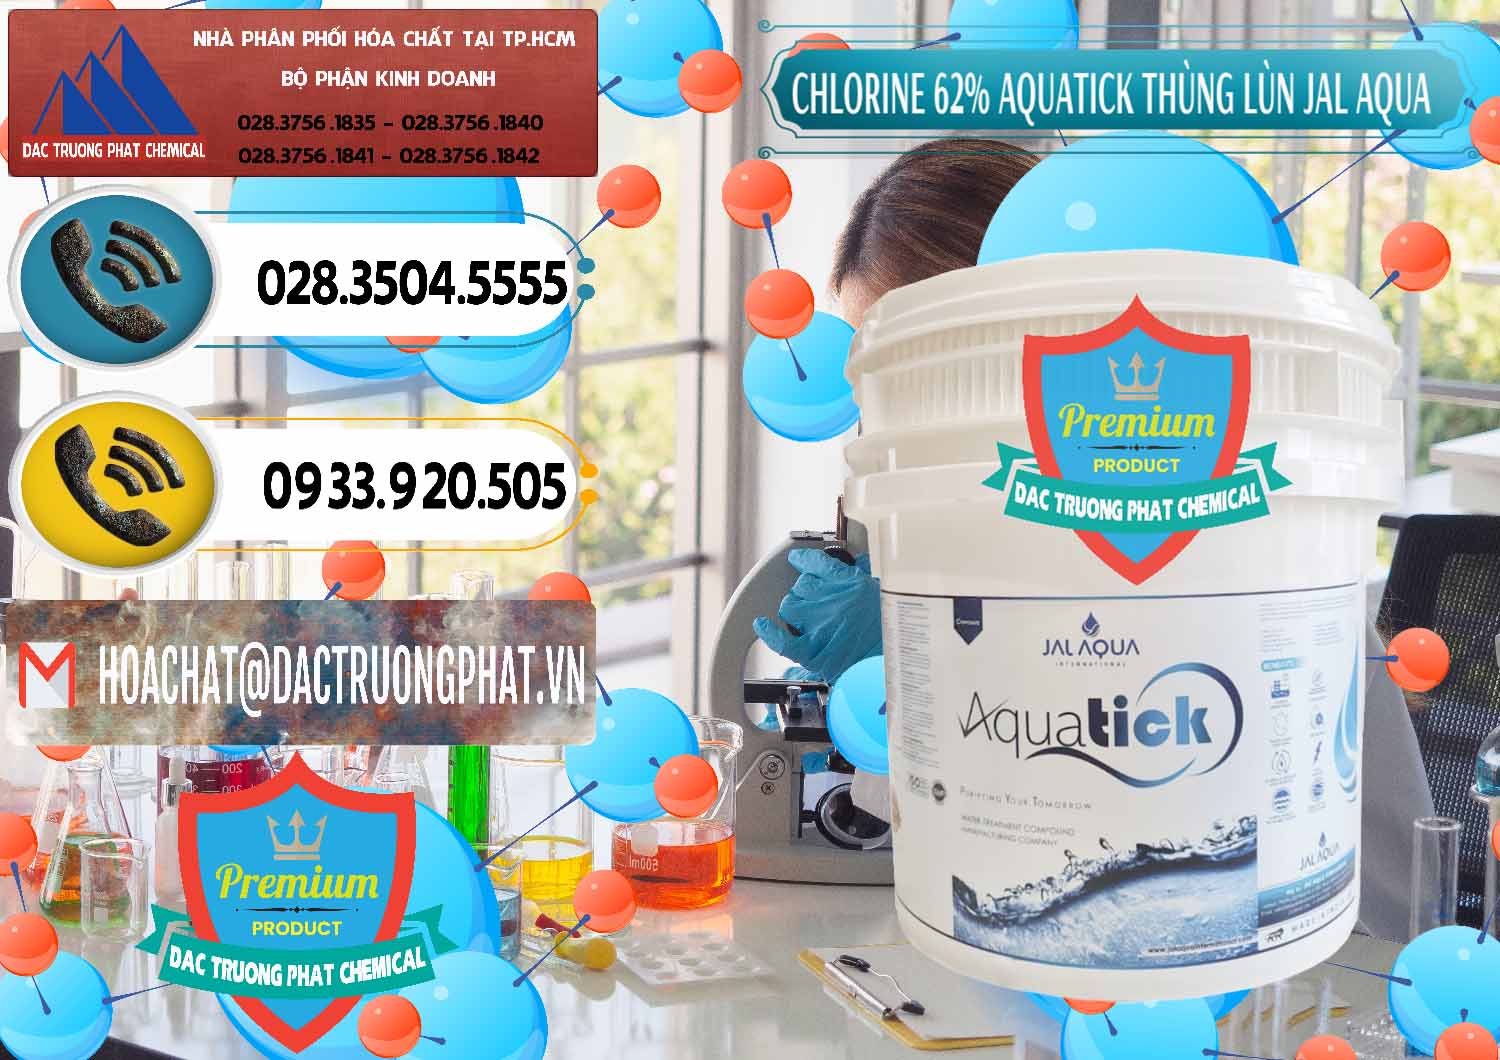 Chuyên bán & phân phối Chlorine – Clorin 62% Aquatick Thùng Lùn Jal Aqua Ấn Độ India - 0238 - Chuyên bán _ phân phối hóa chất tại TP.HCM - hoachatdetnhuom.vn